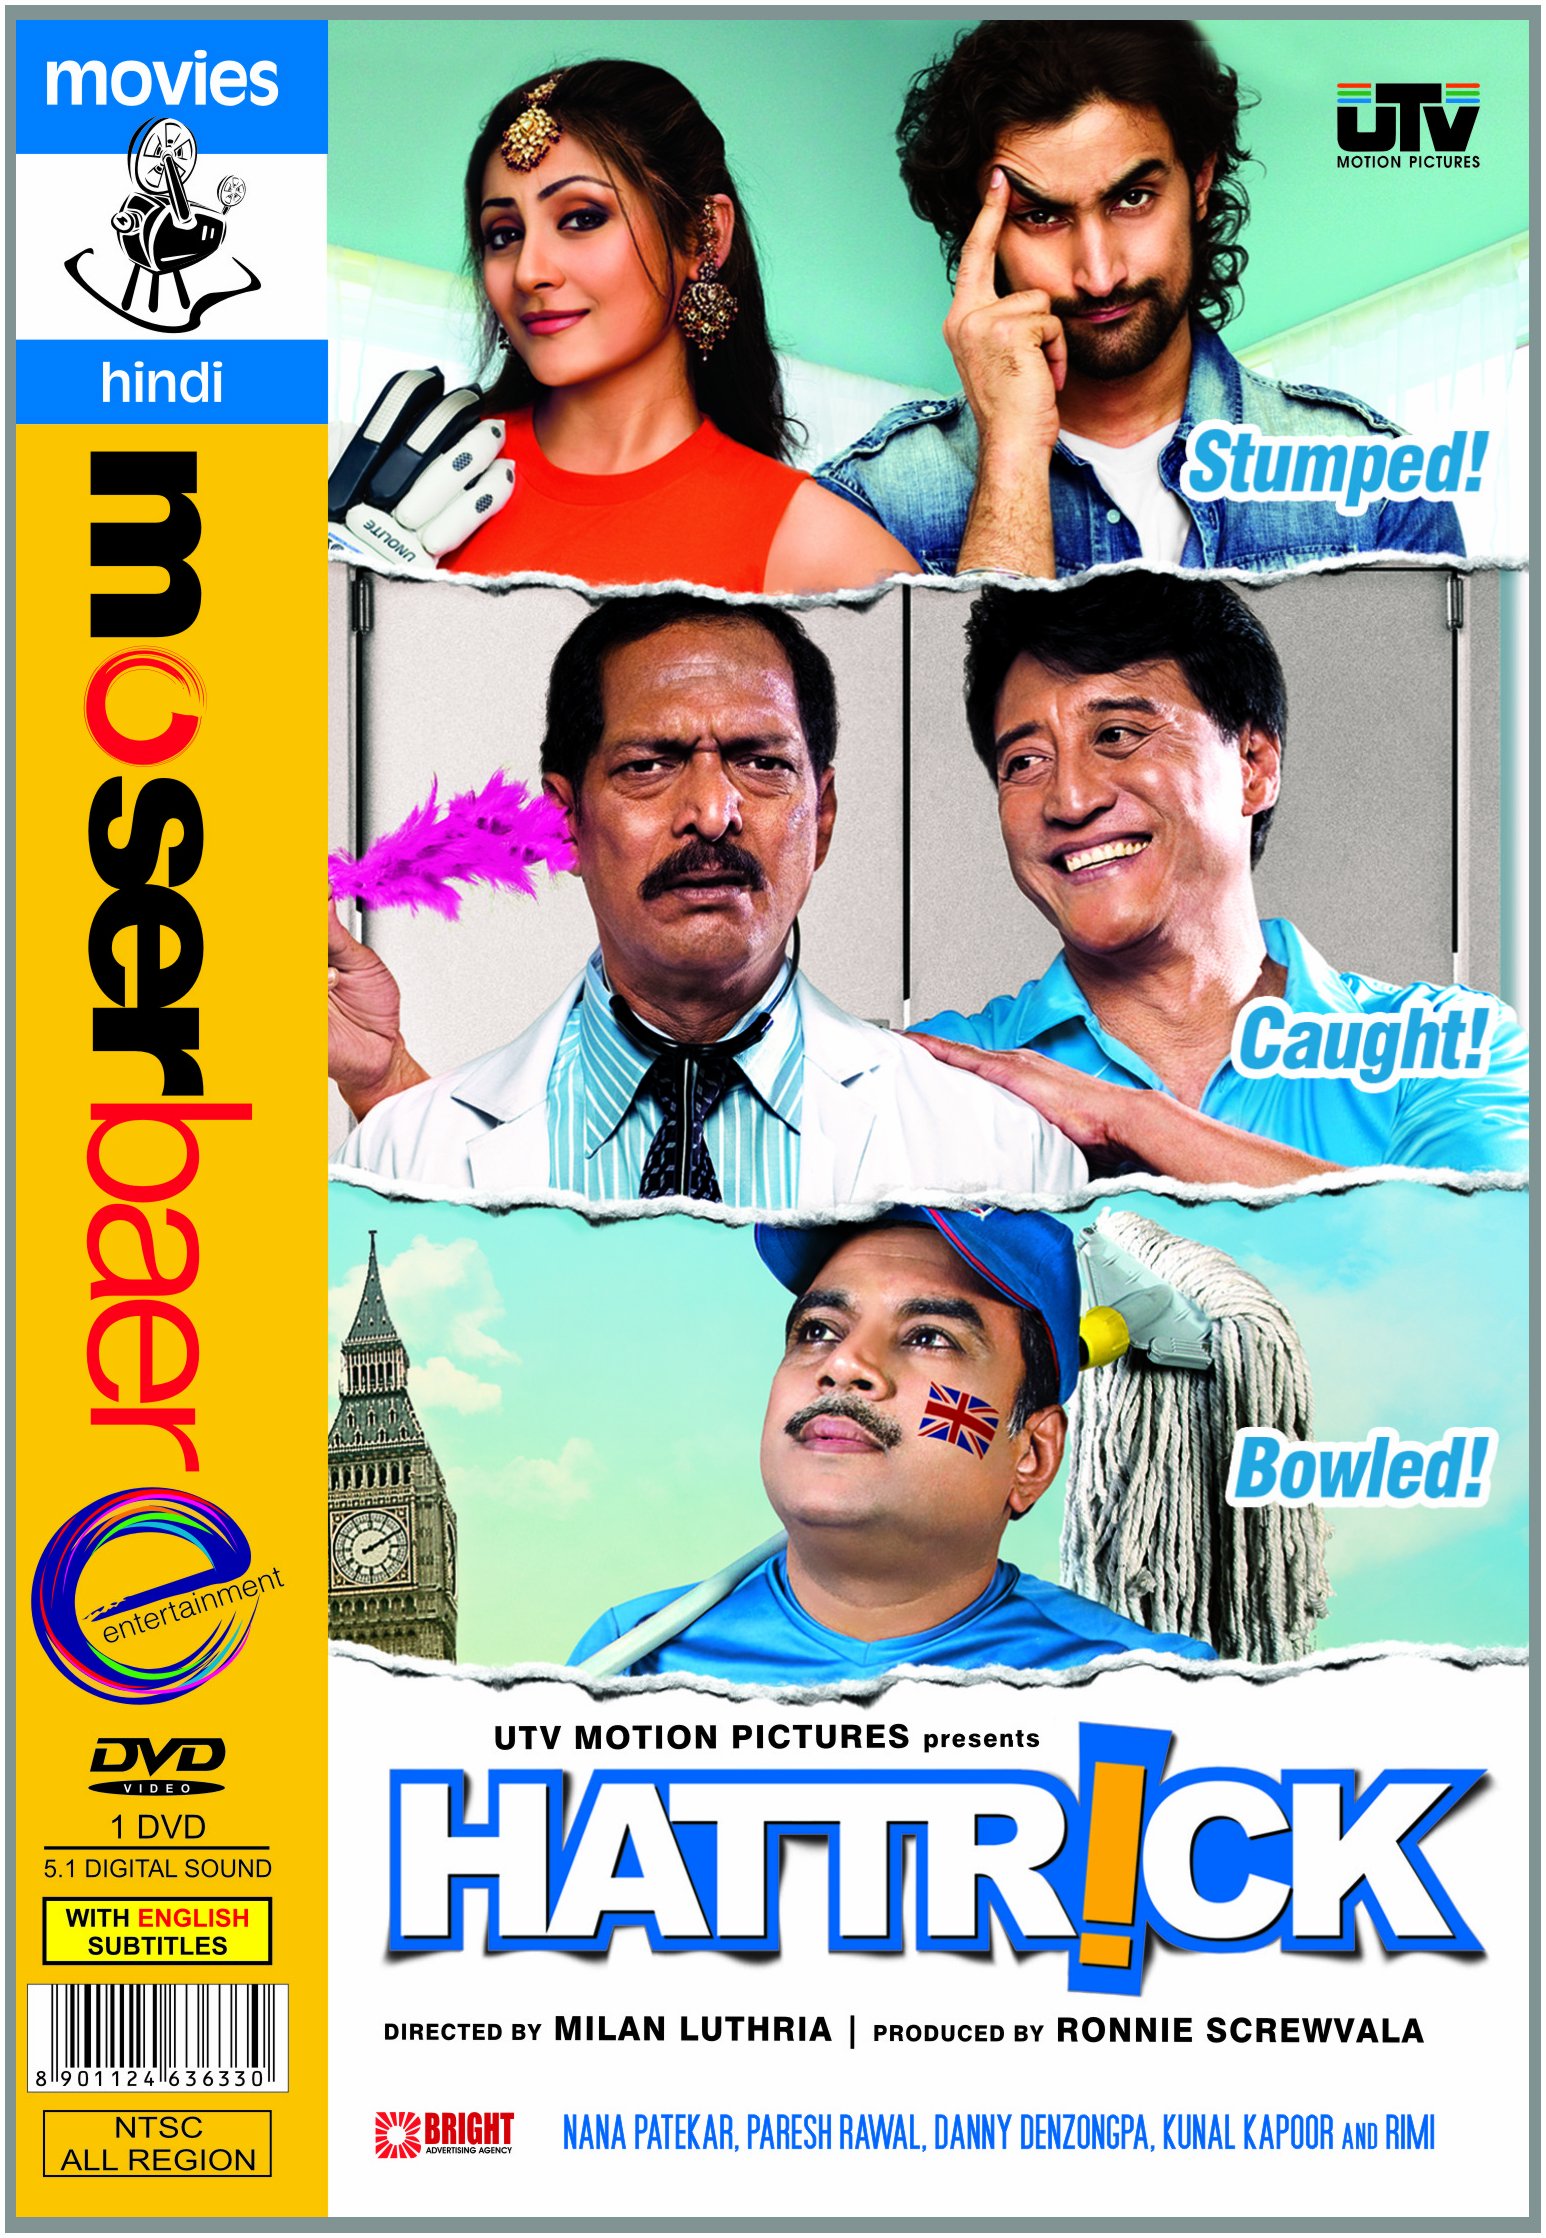 hattrick-movie-purchase-or-watch-online